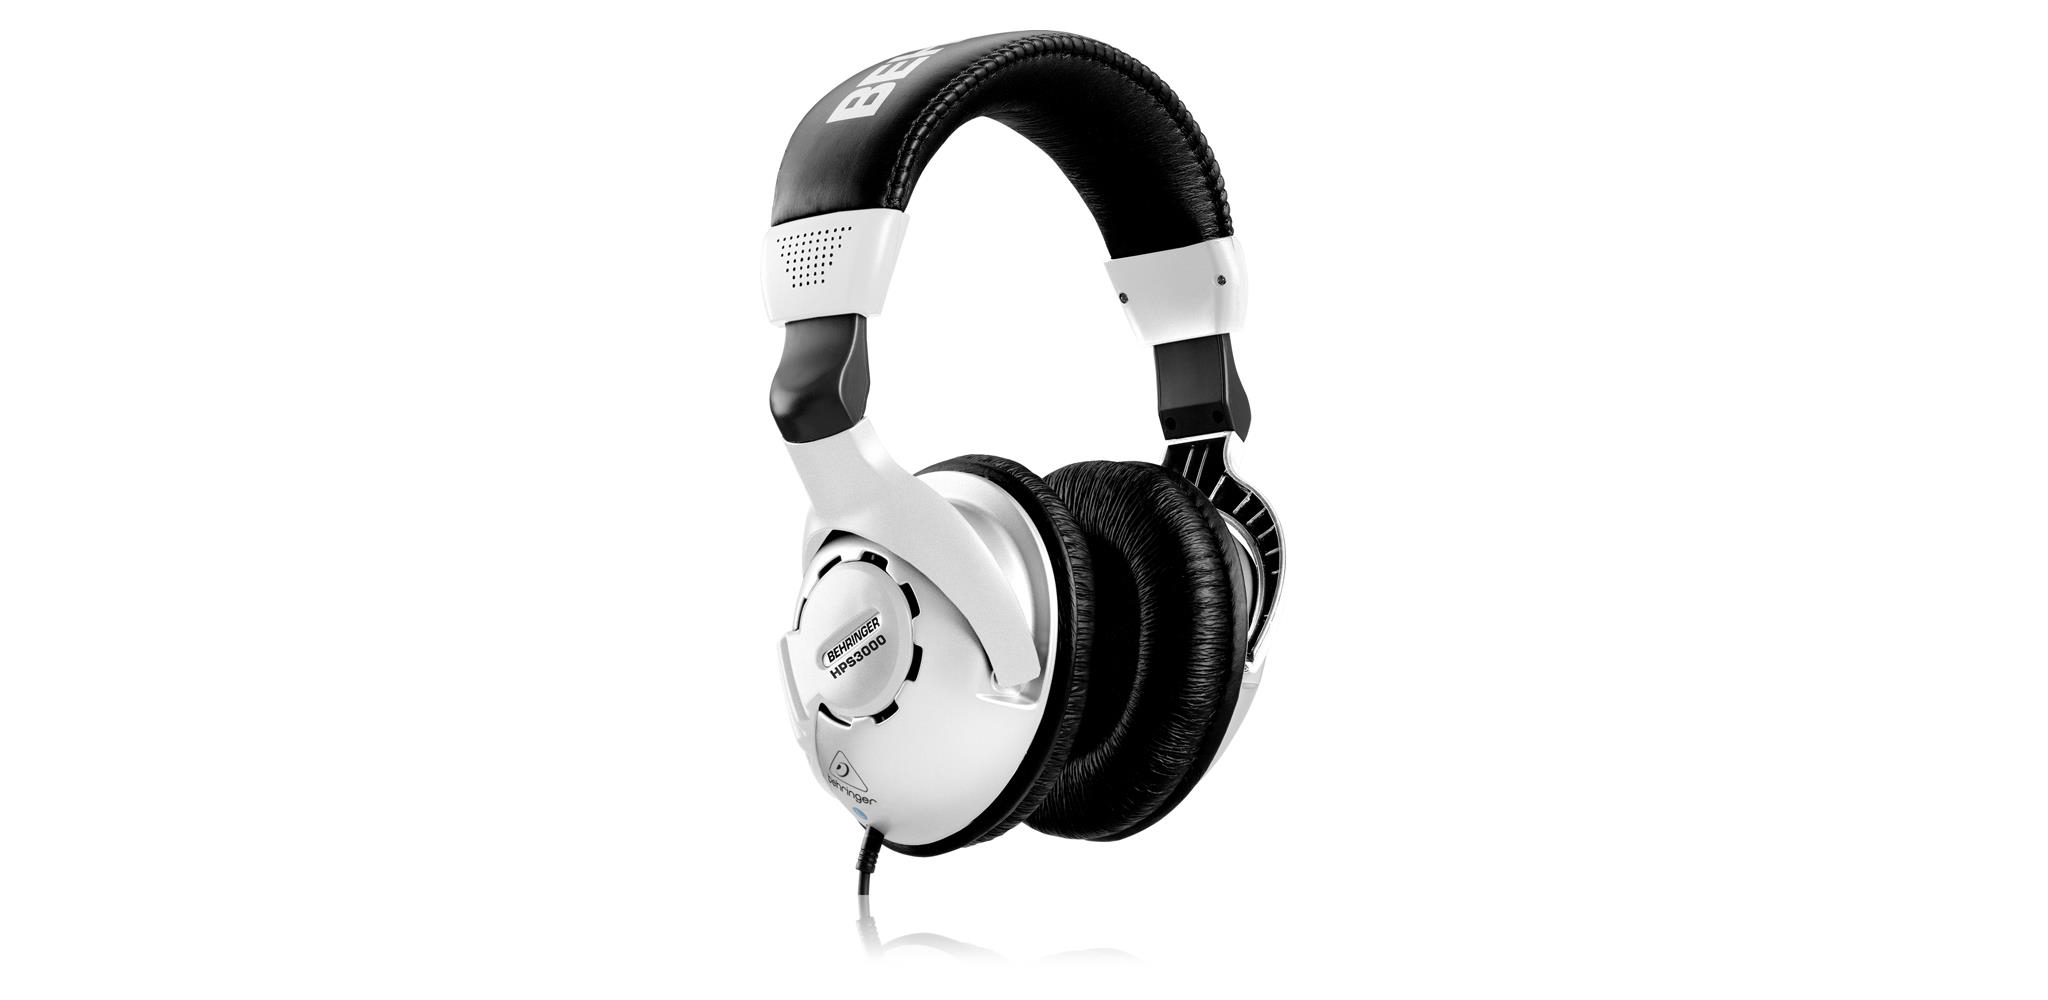 Studio Headphones Behringer HPS3000